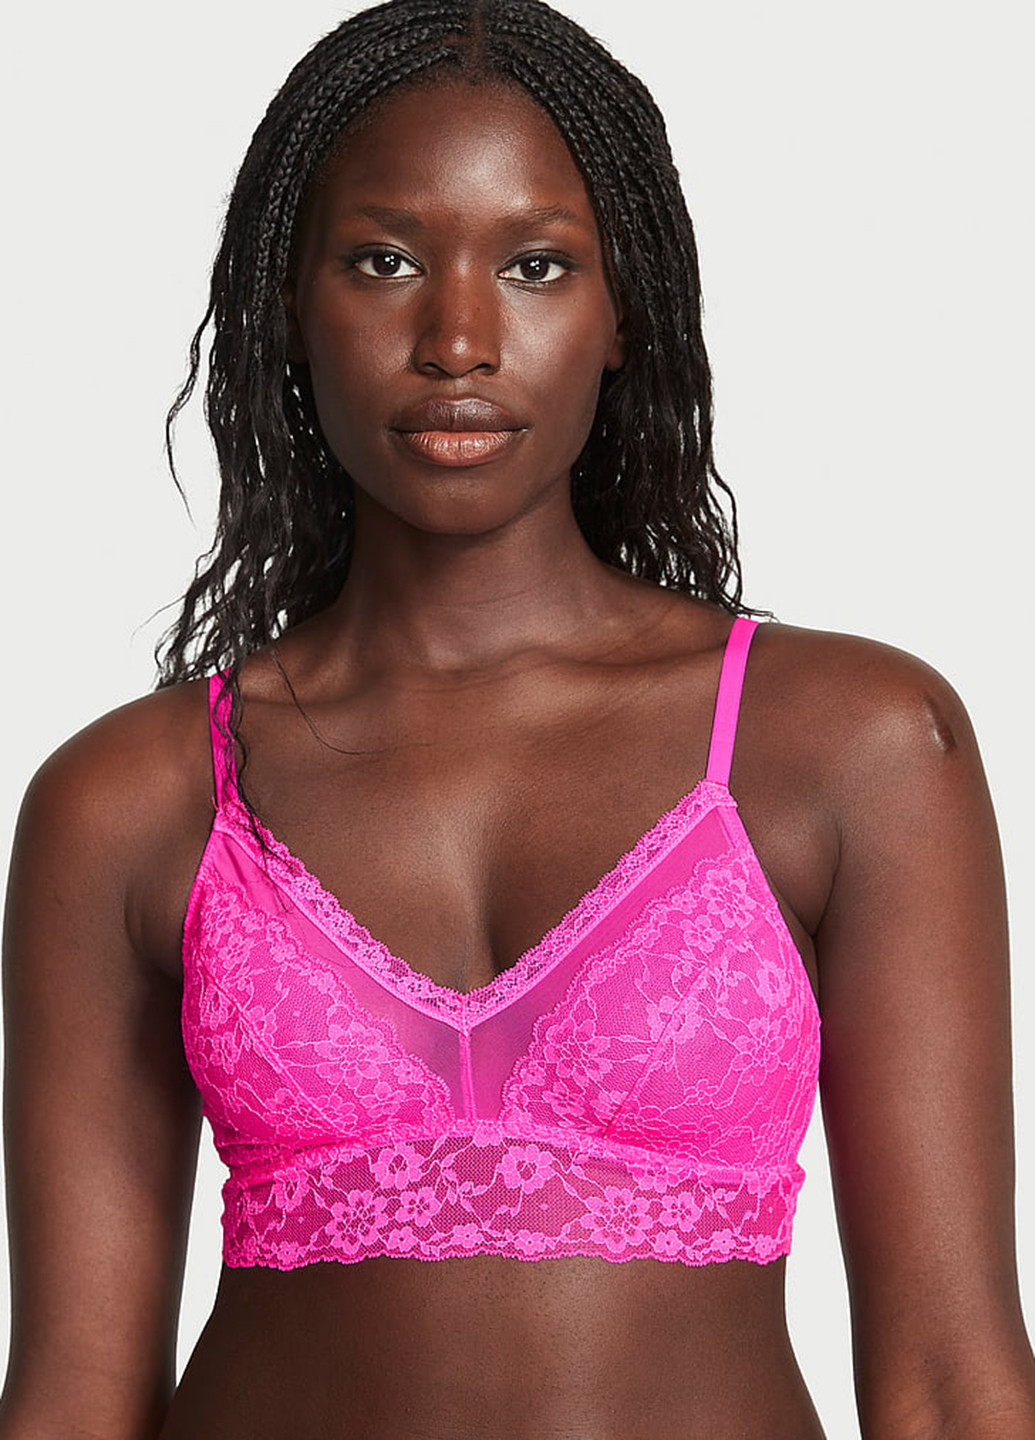 Кислотно-розовый демисезонный комплект (бюстгальтер, трусики) Victoria's Secret